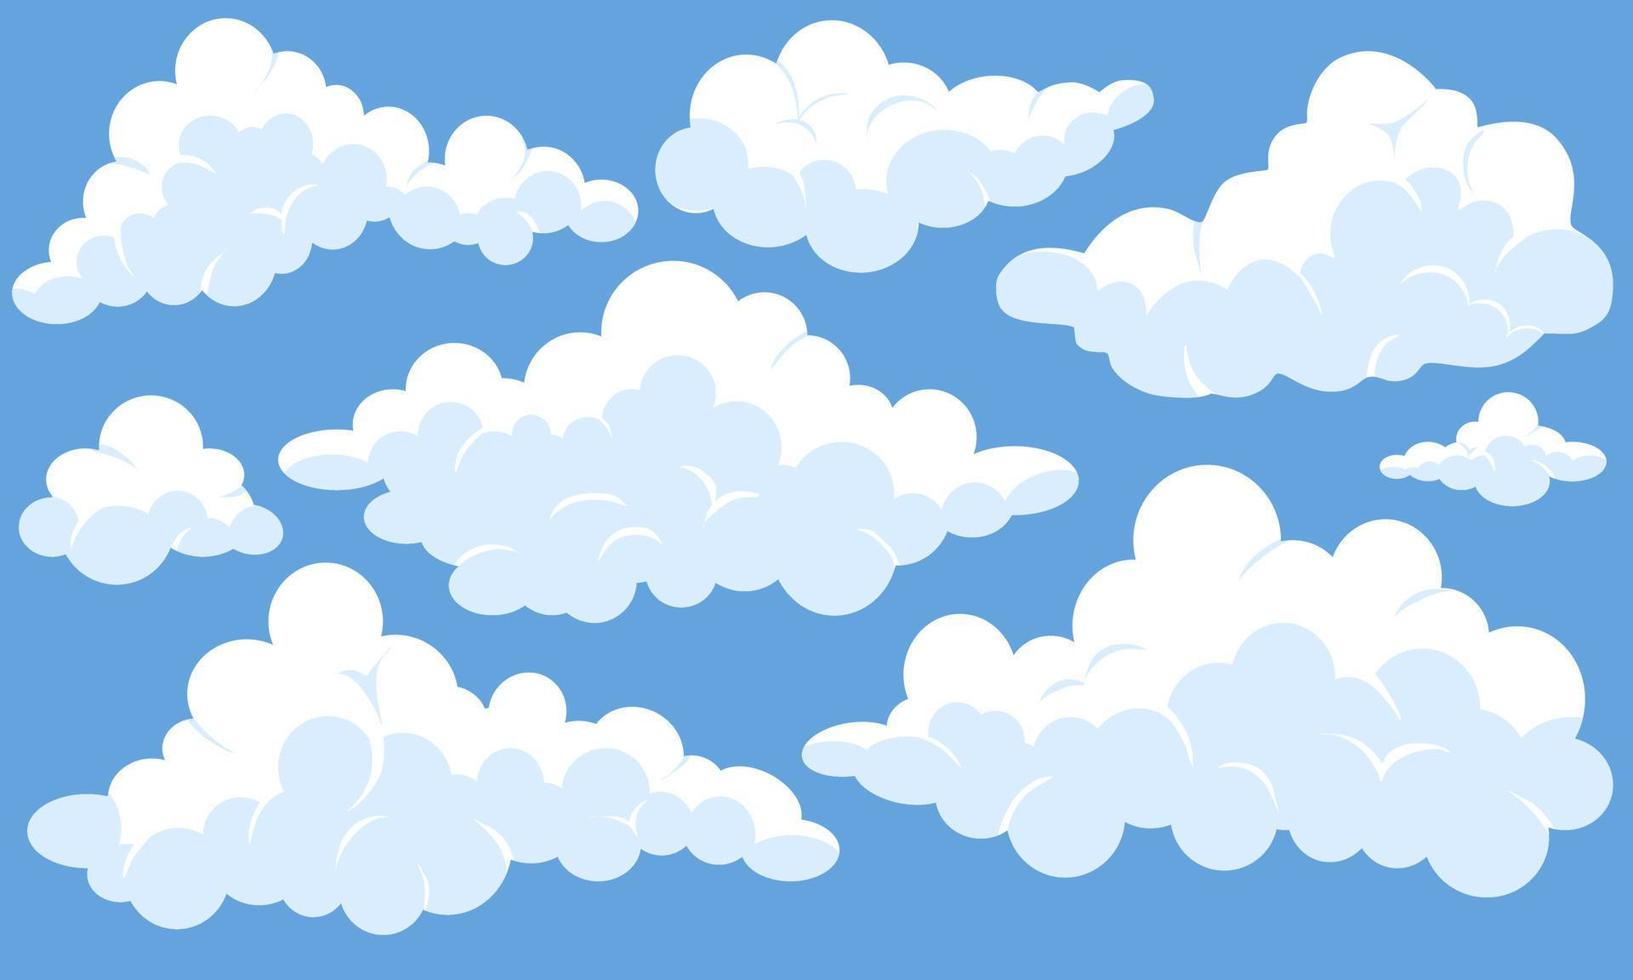 coleção de elementos de nuvens fofas dos desenhos animados vetor